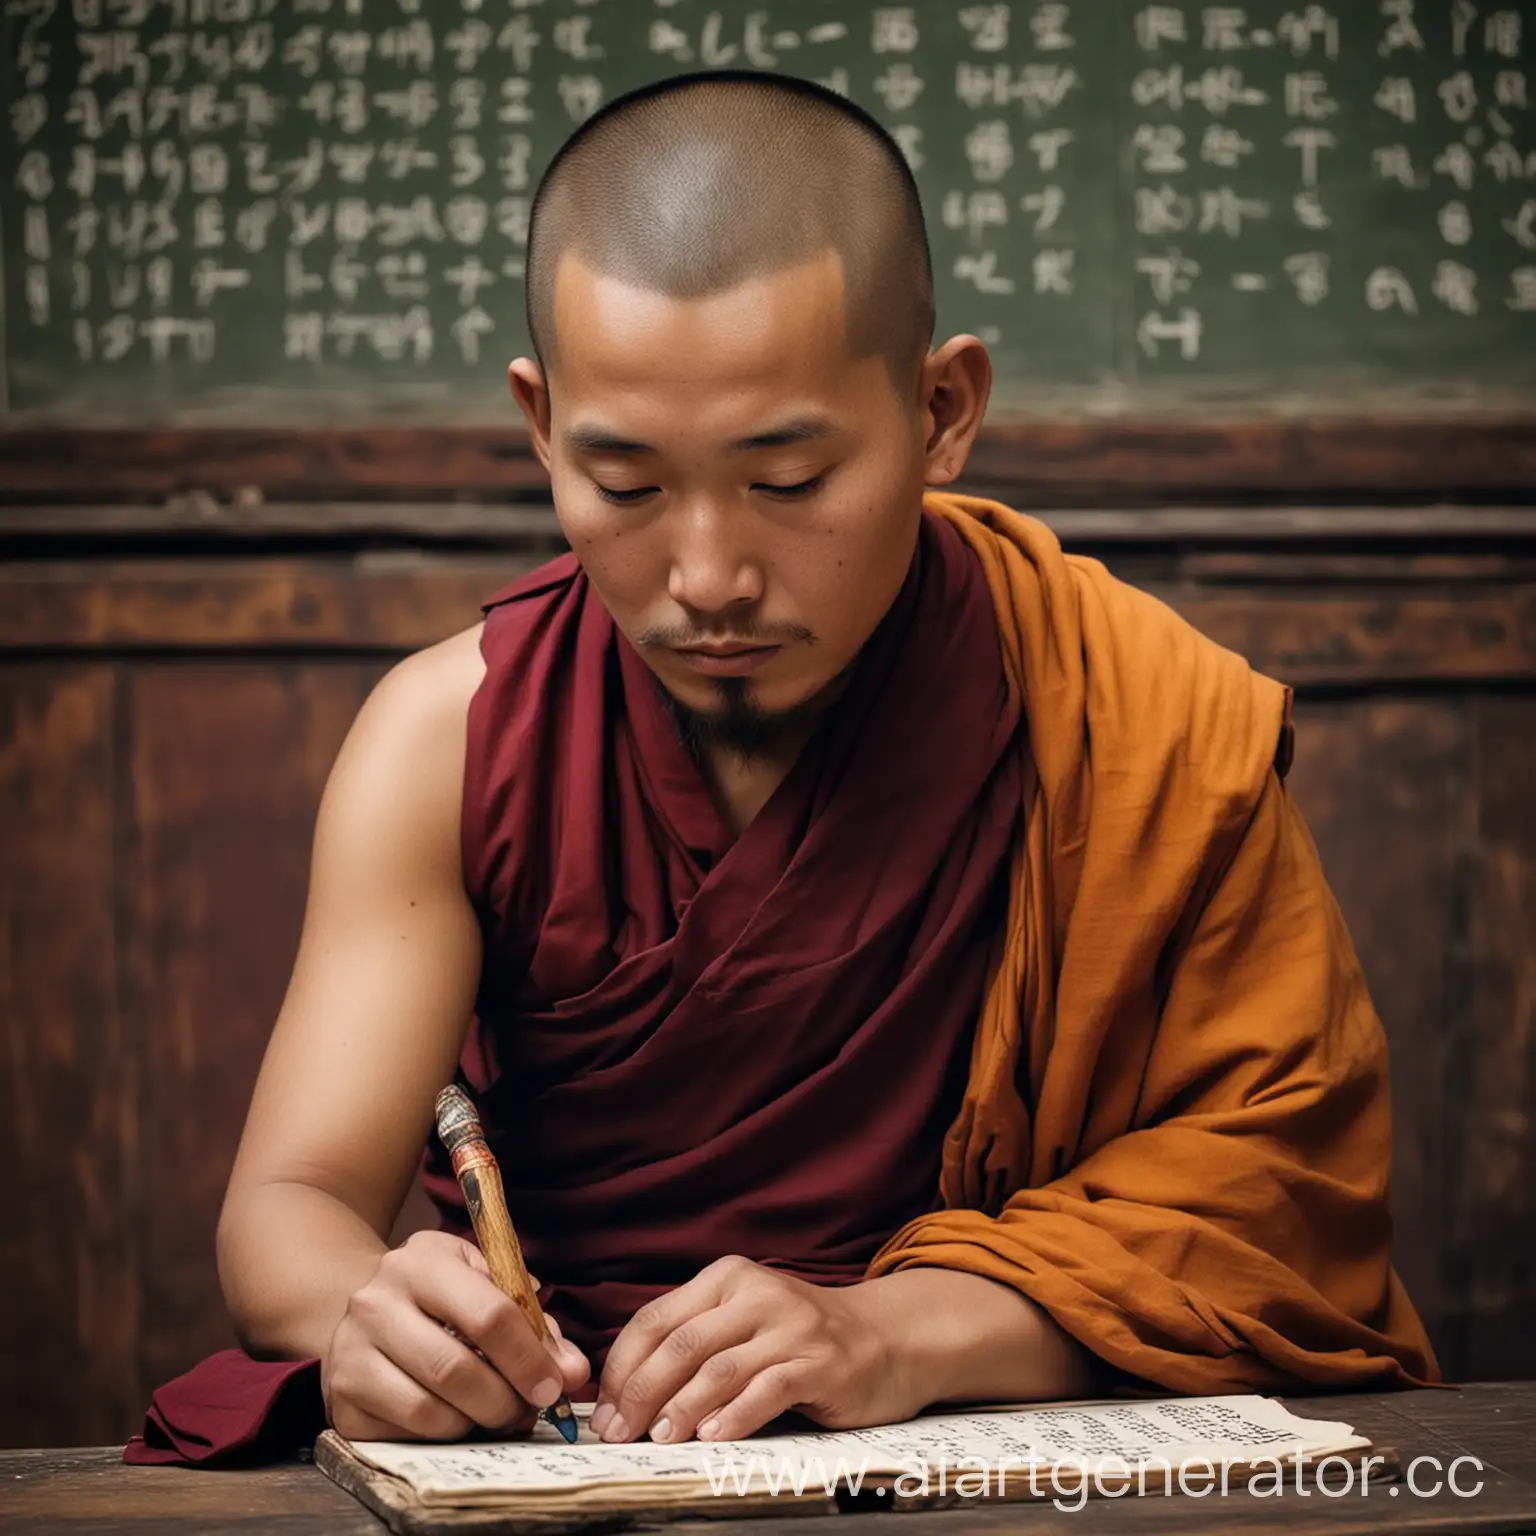 тибетский монах, решает математическую задачу на доске, в руках у него счеты